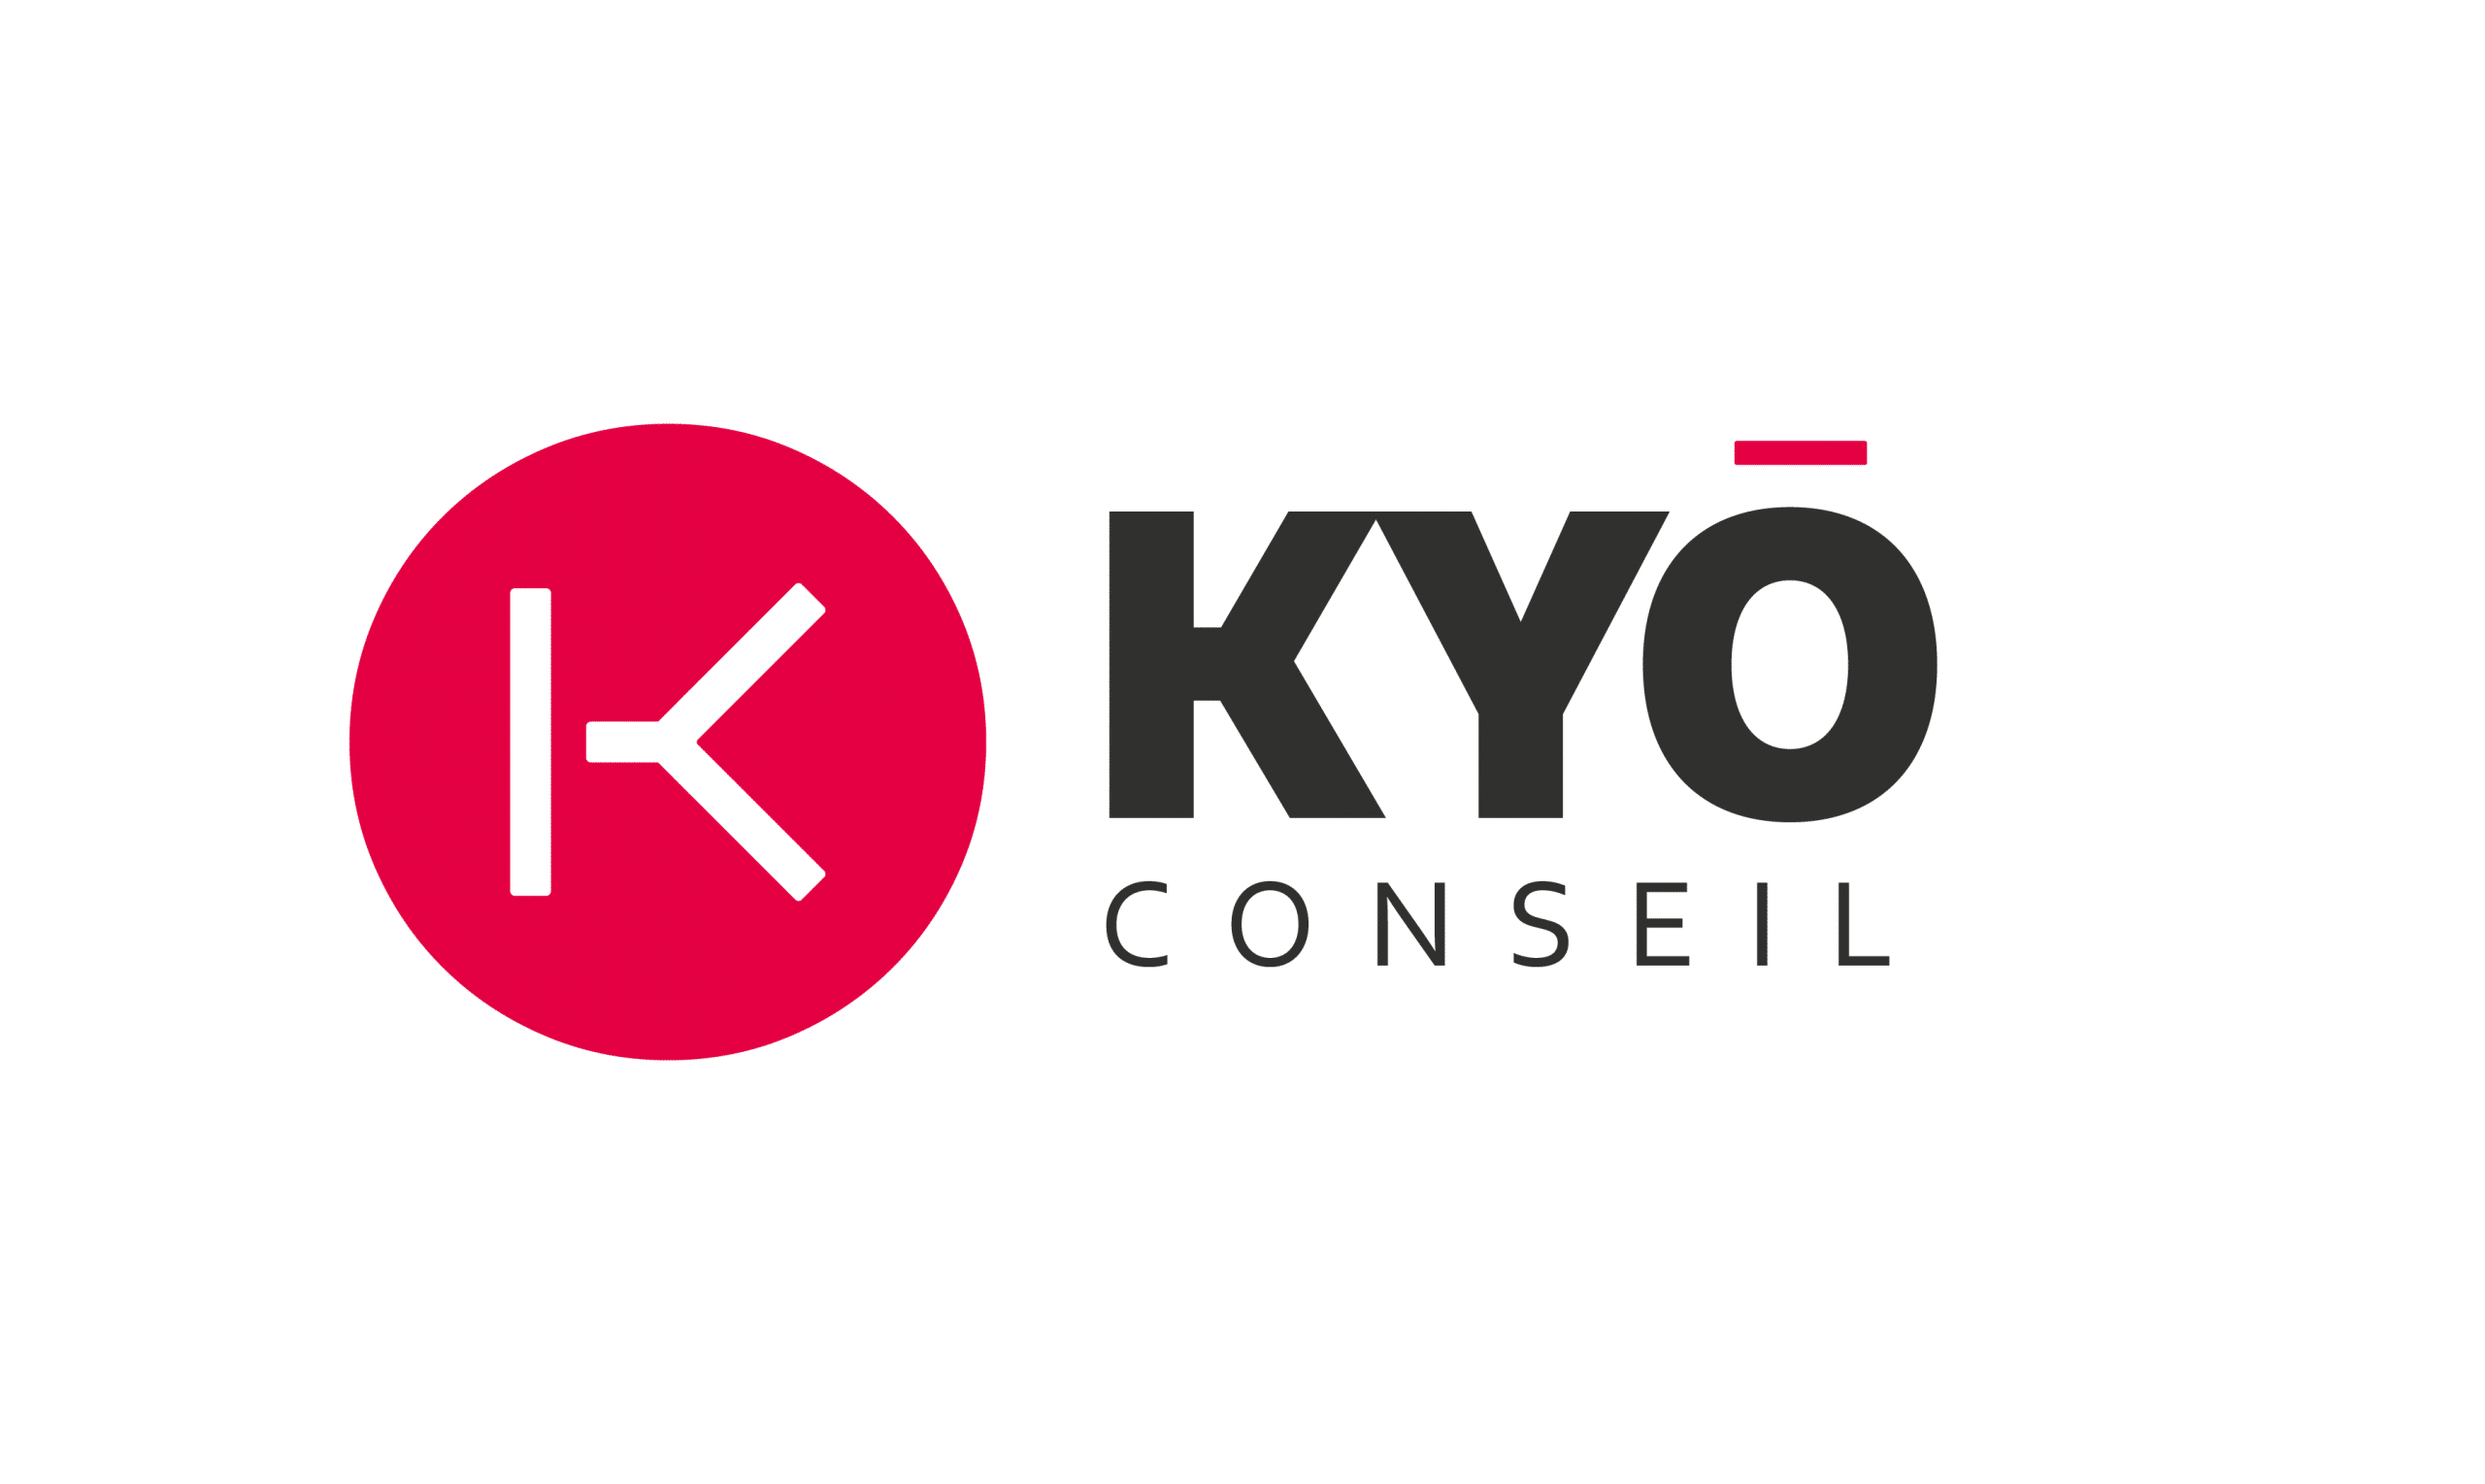 Kyo conseil Portfolio